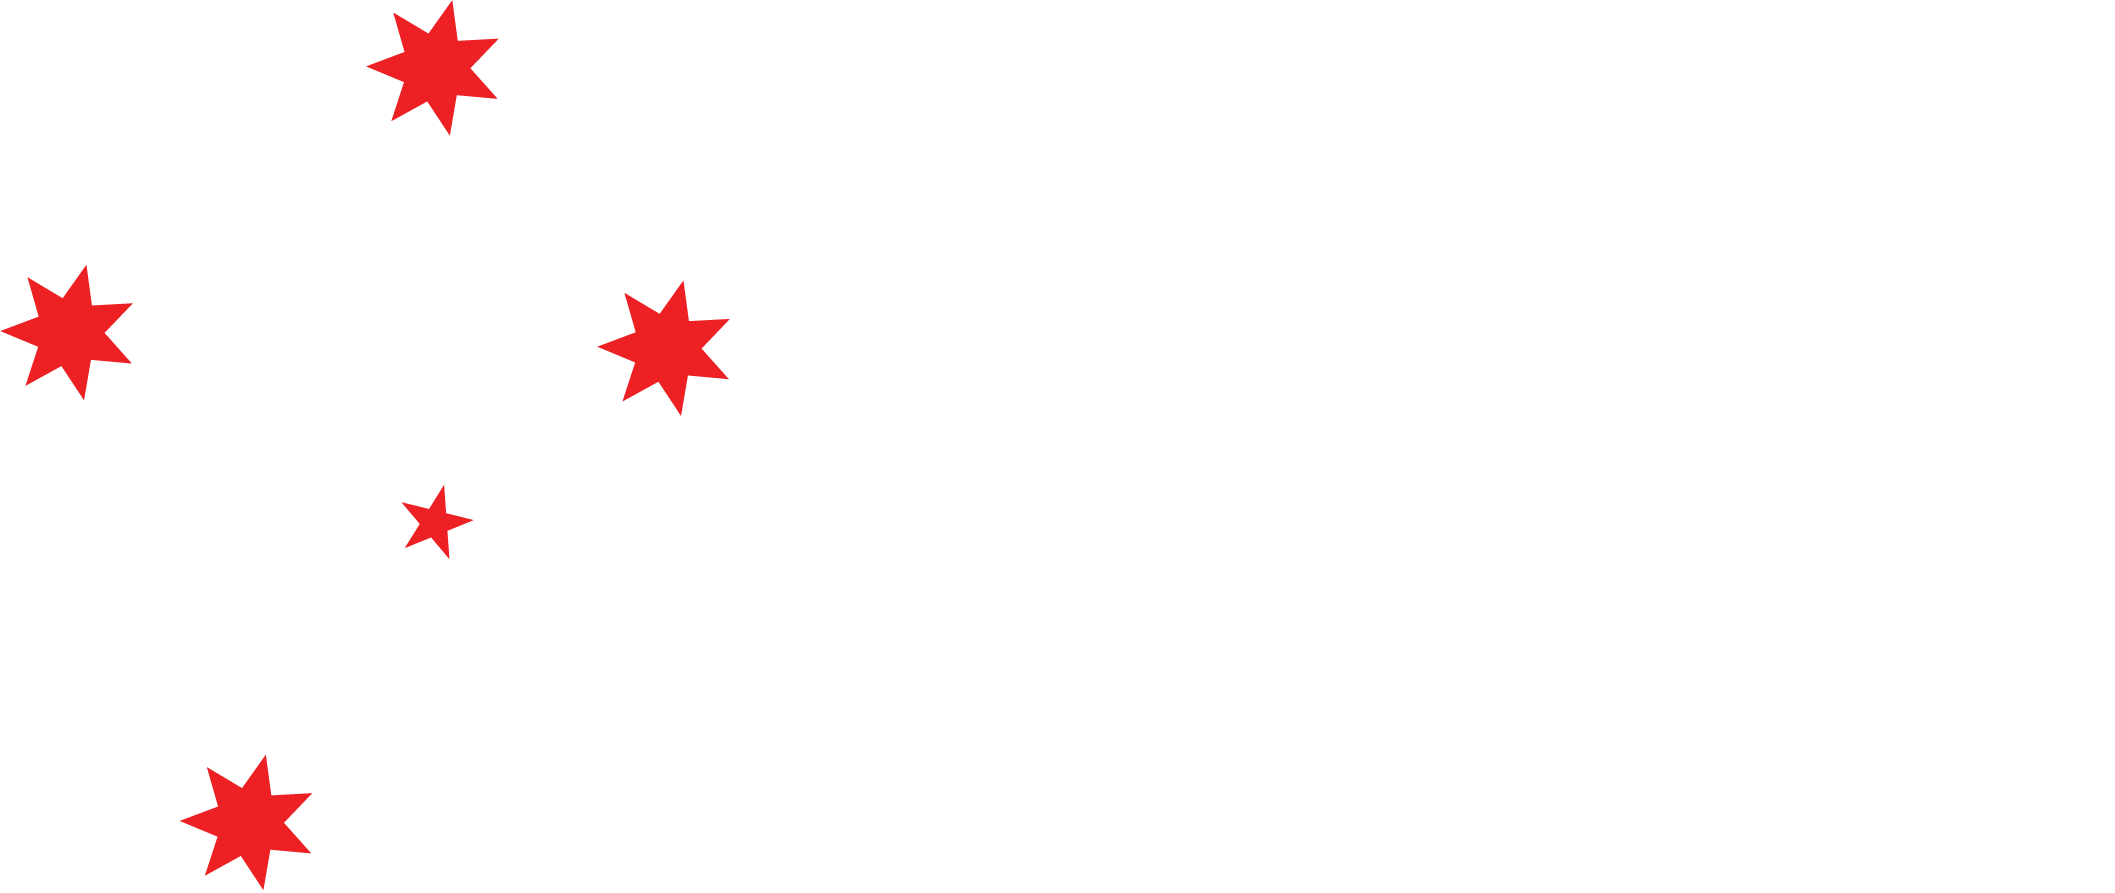 Southern Cross Camper Trailers & Hybrid Caravans